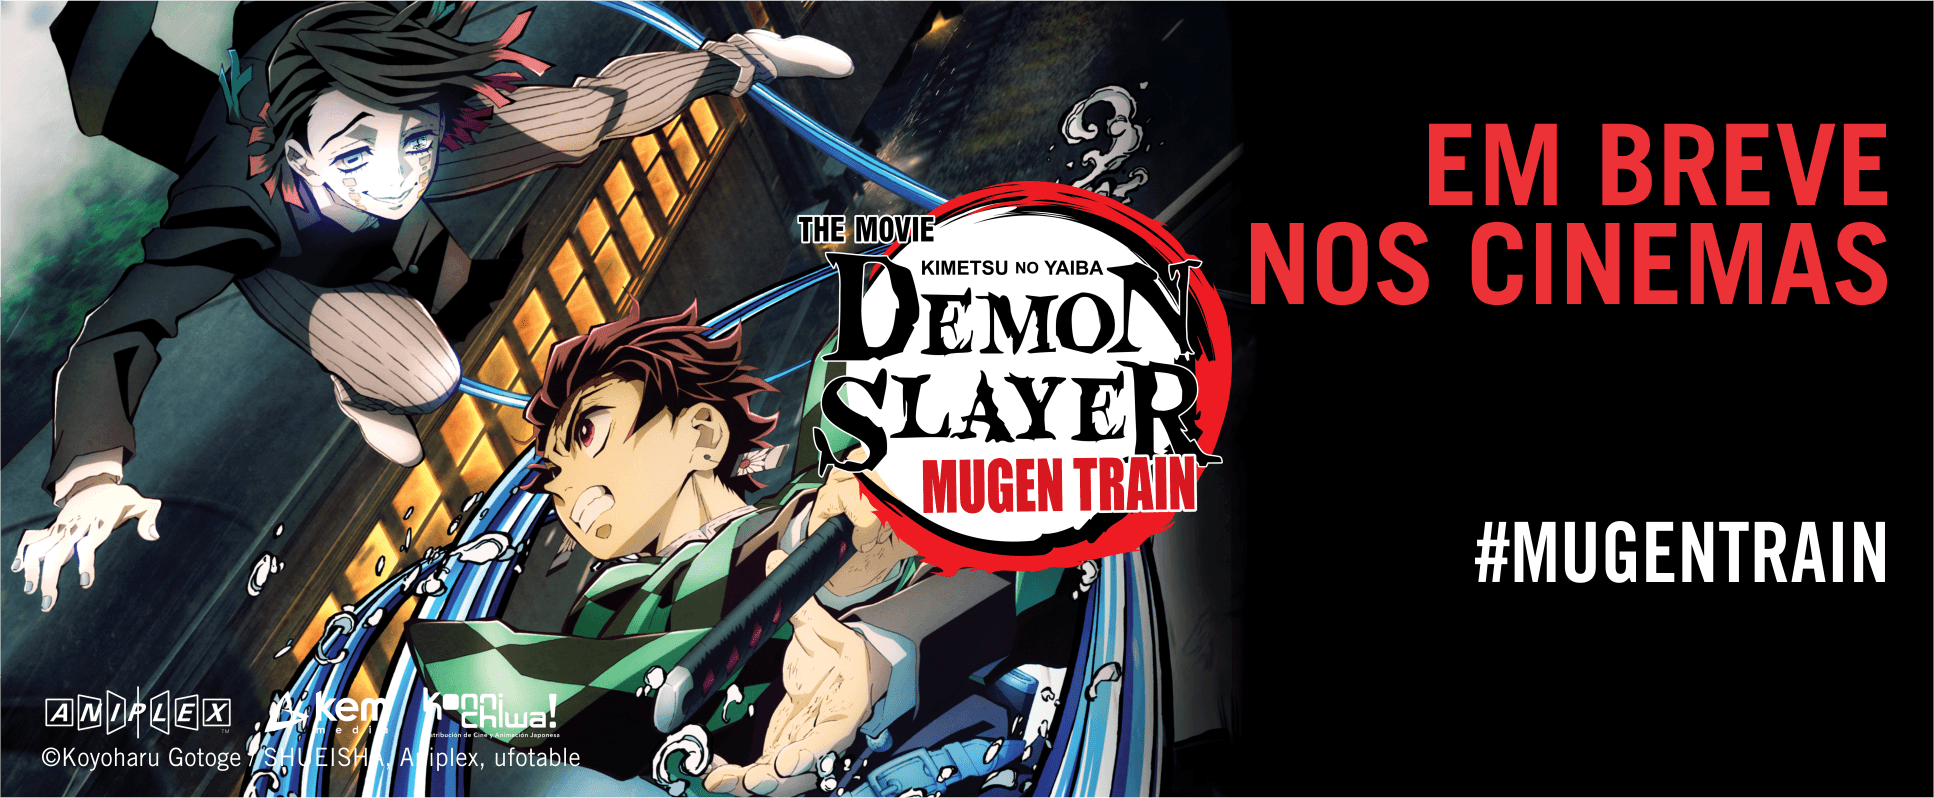 Demon Slayer: Mugen Train  Sucesso de bilheteria vai ser exibido